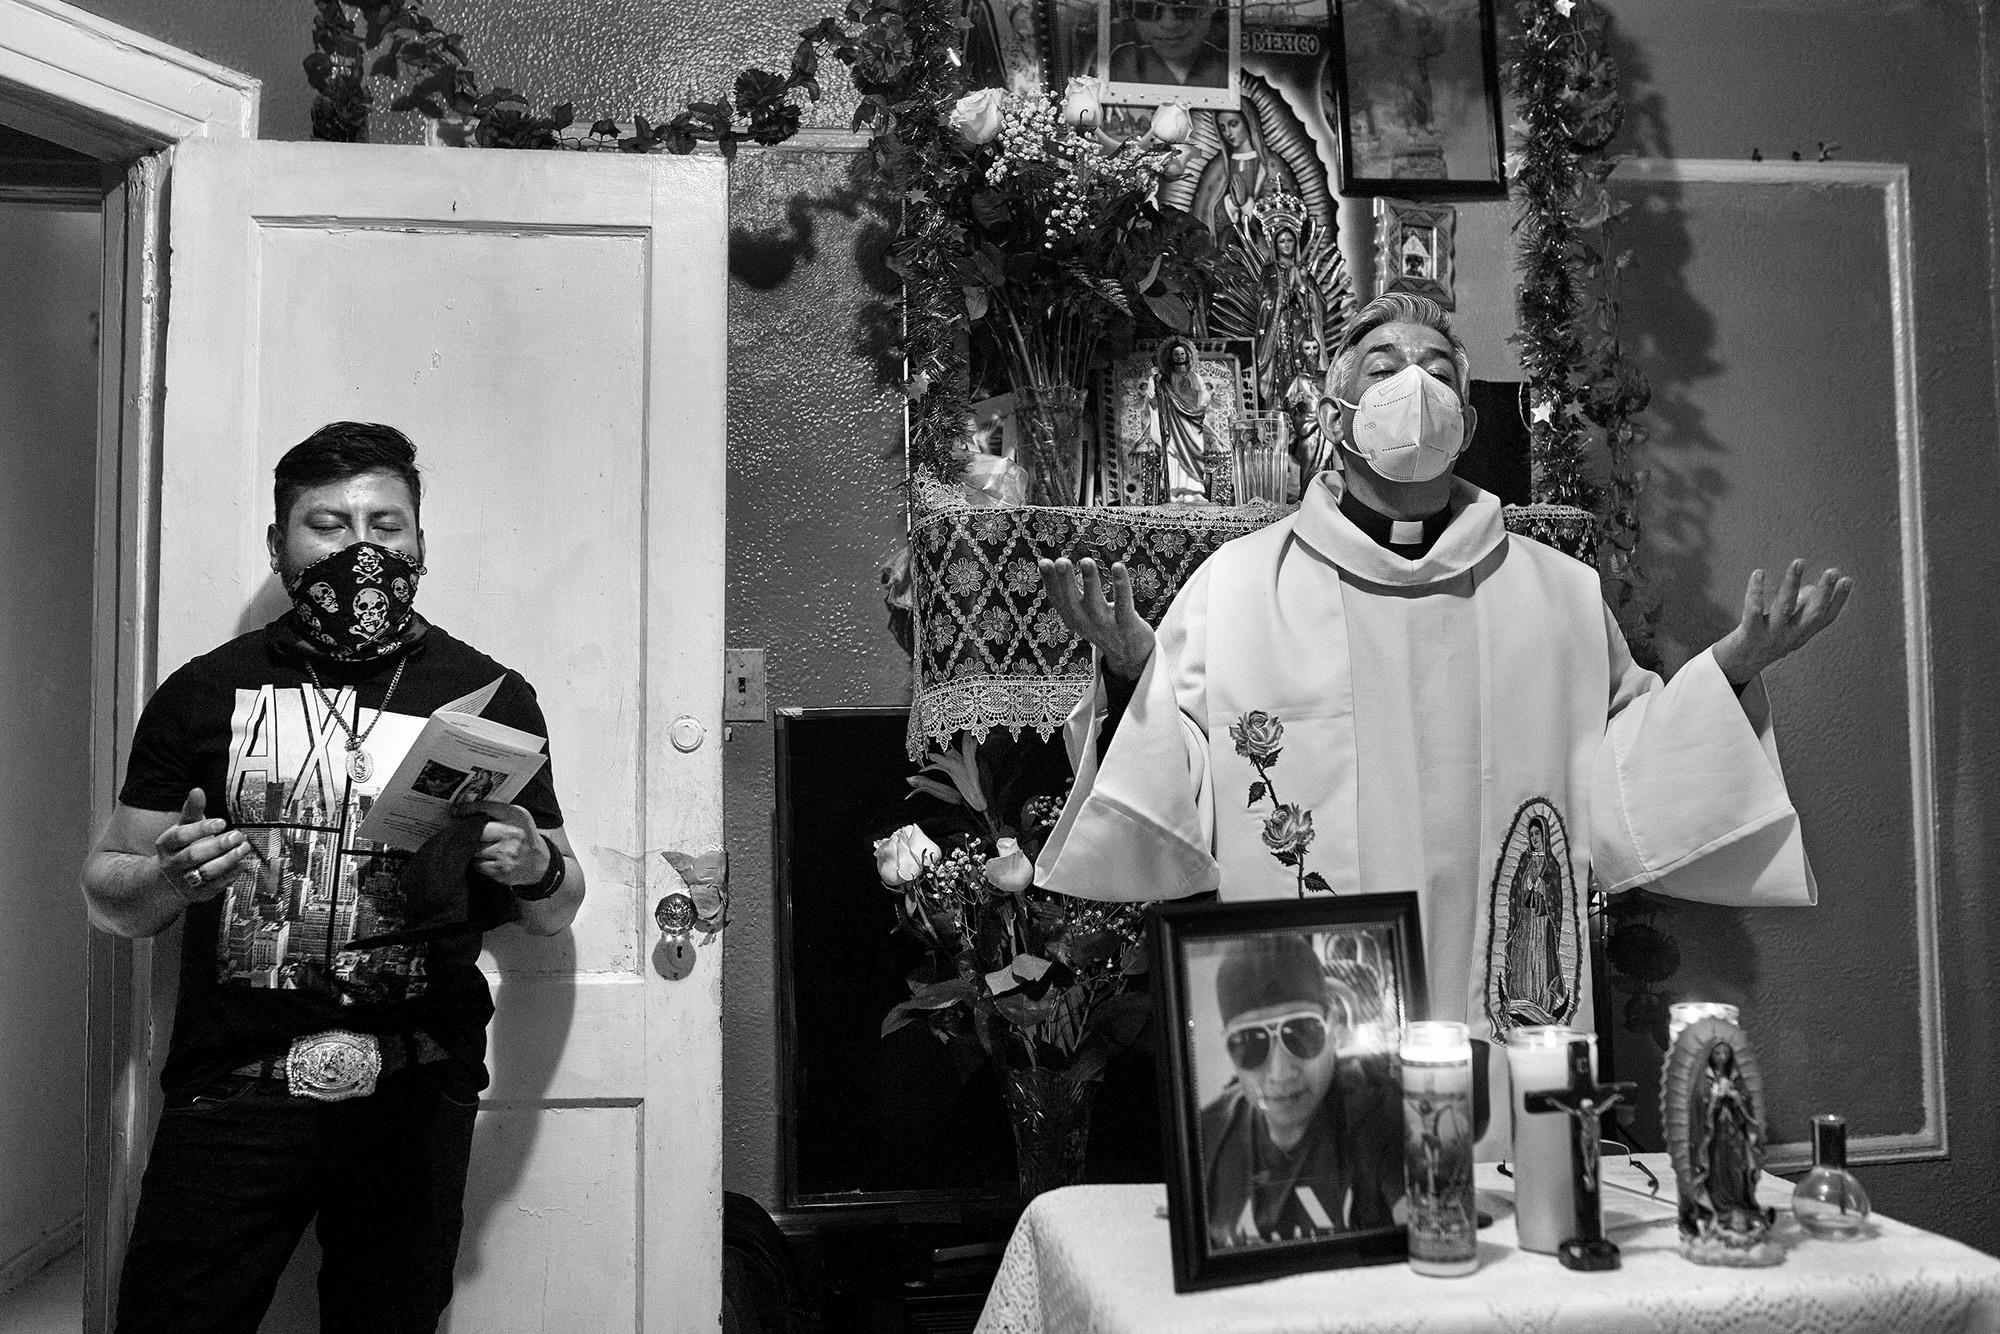 El padre Fabián Ariaas, sacerdote argentino que atiende a la comunidad latina en Nueva York, oficia una misa en memoria de Raúl Luis López, migrante mexicano muerto por Covid-19 el 18 de abril de 2020, a los 39 años. Foto de El Faro: Edu Ponces/ Ruido Photo.